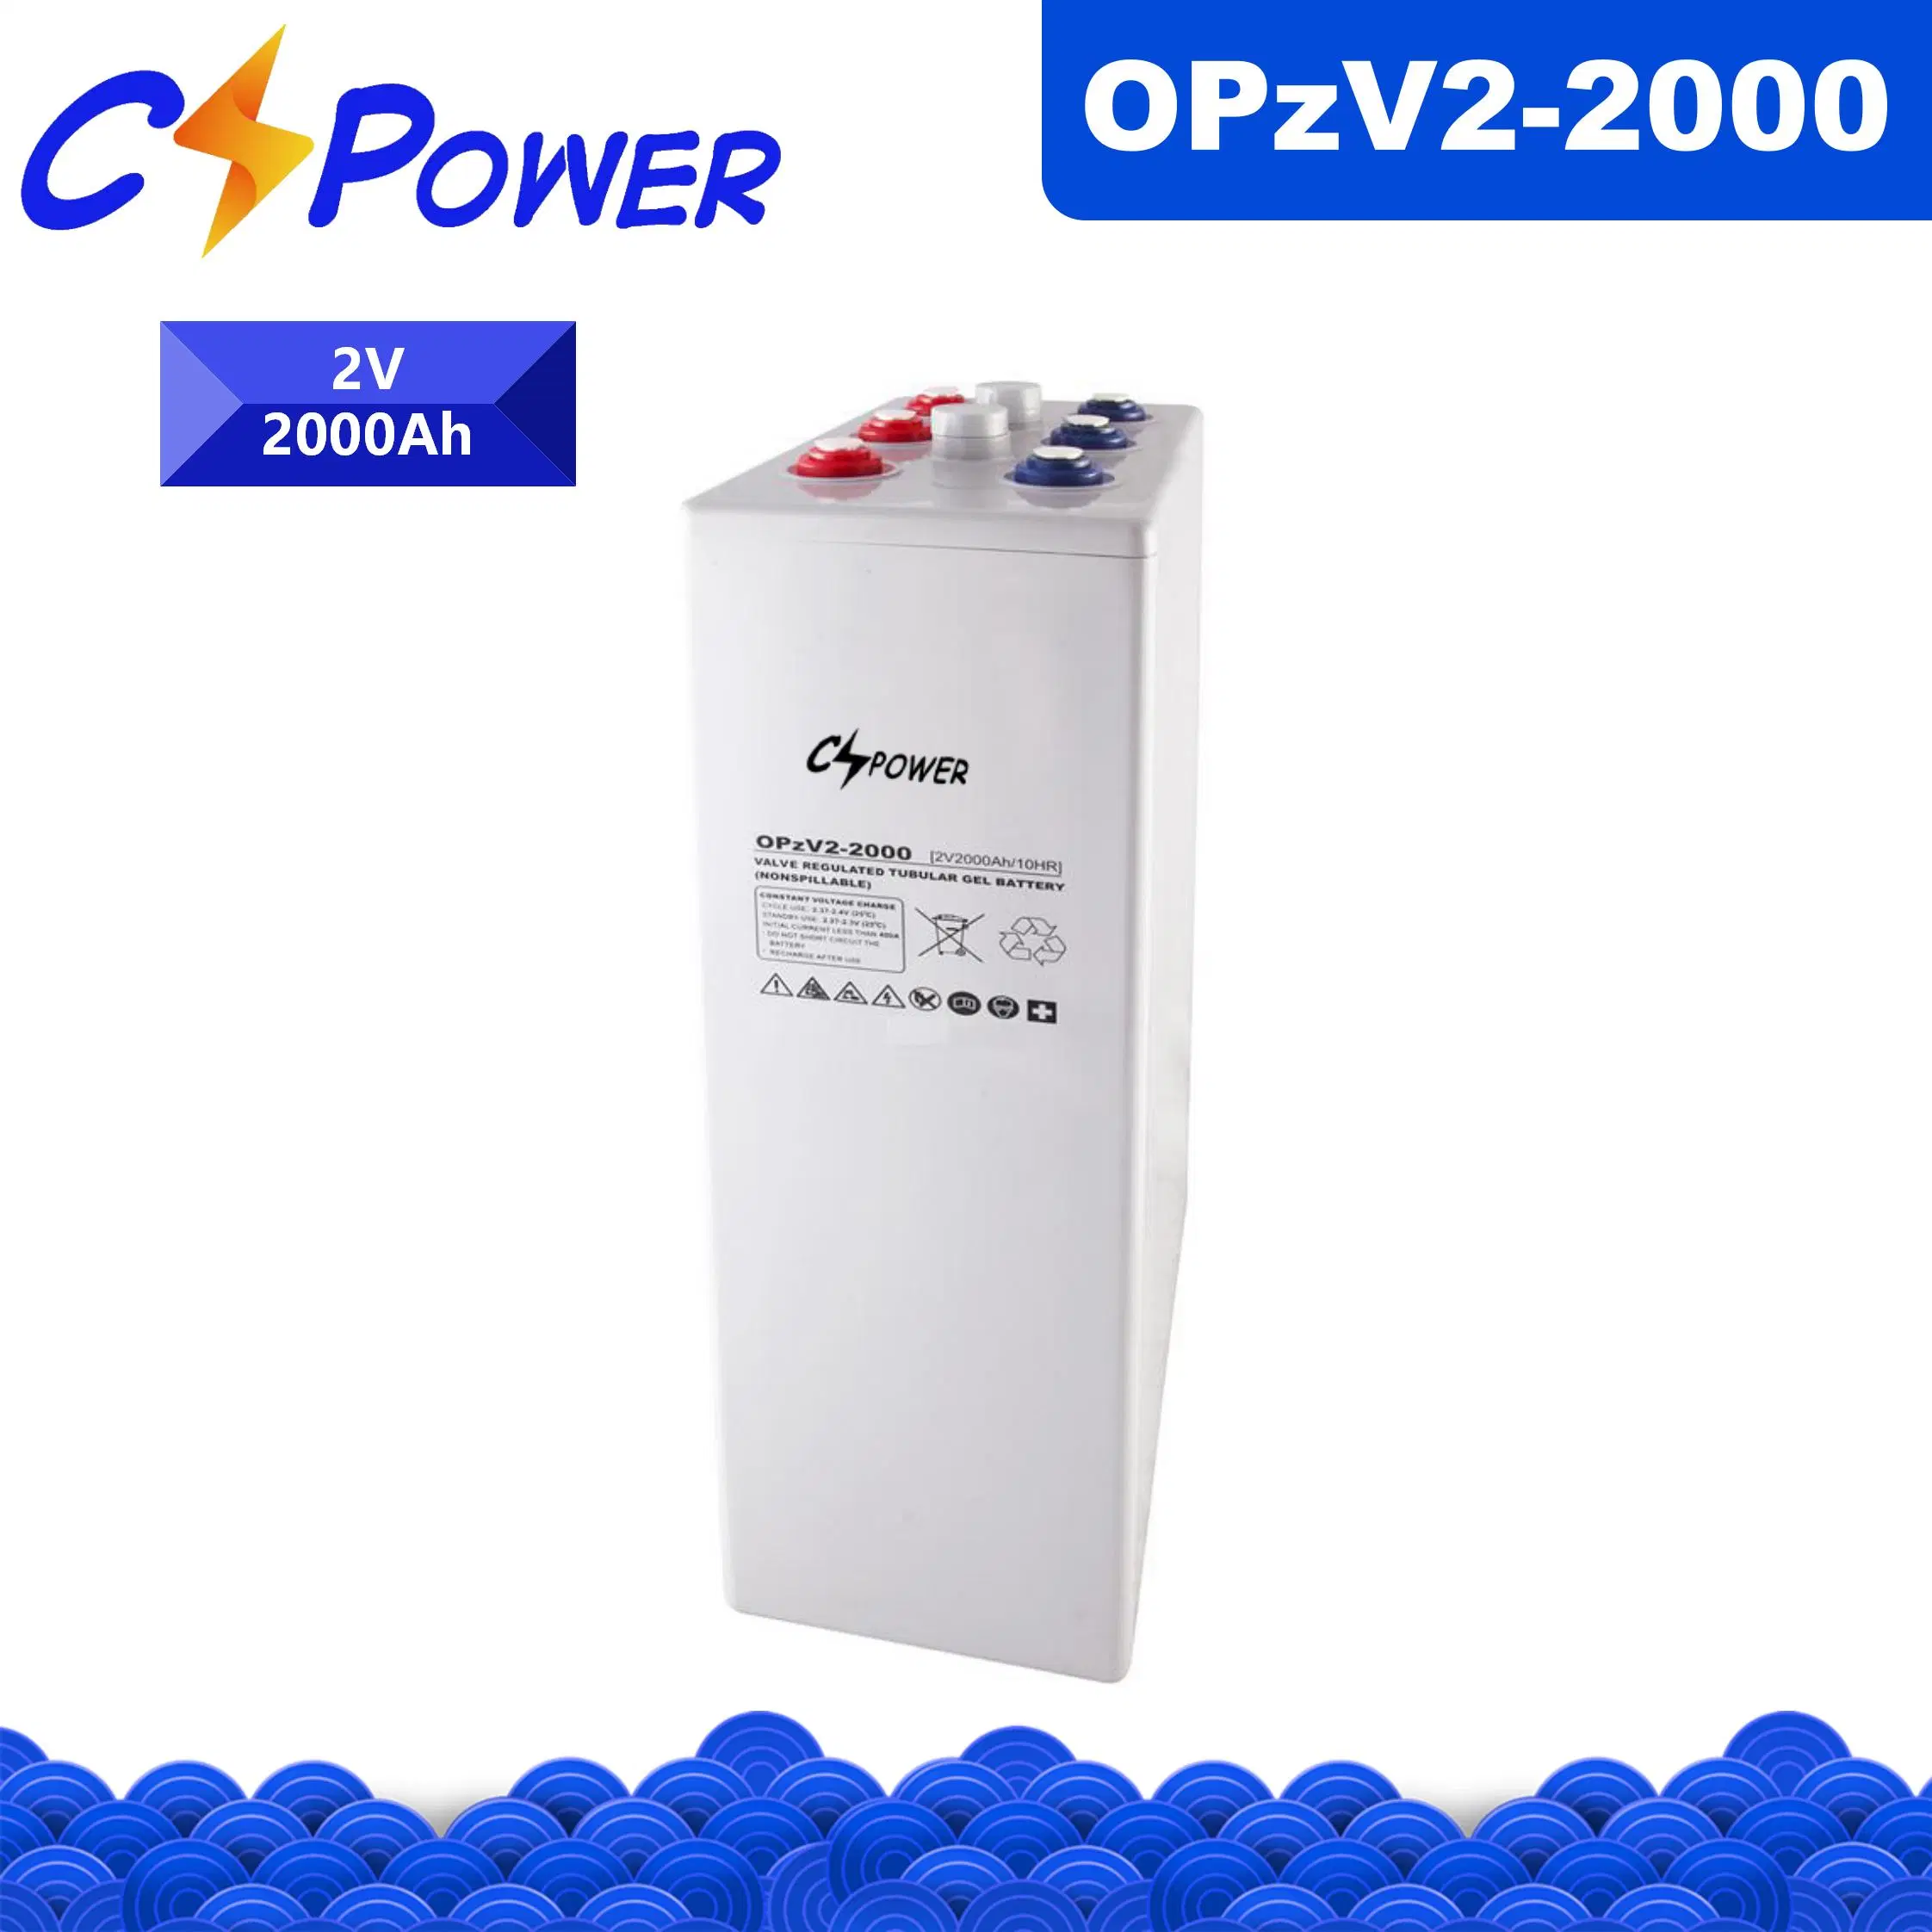 Cspower Opzv-Gel-Tubular-Battery/Opzv-Solar-Power-Battery 2V 2000Ah para Telecom/Energía del Sistema Solar